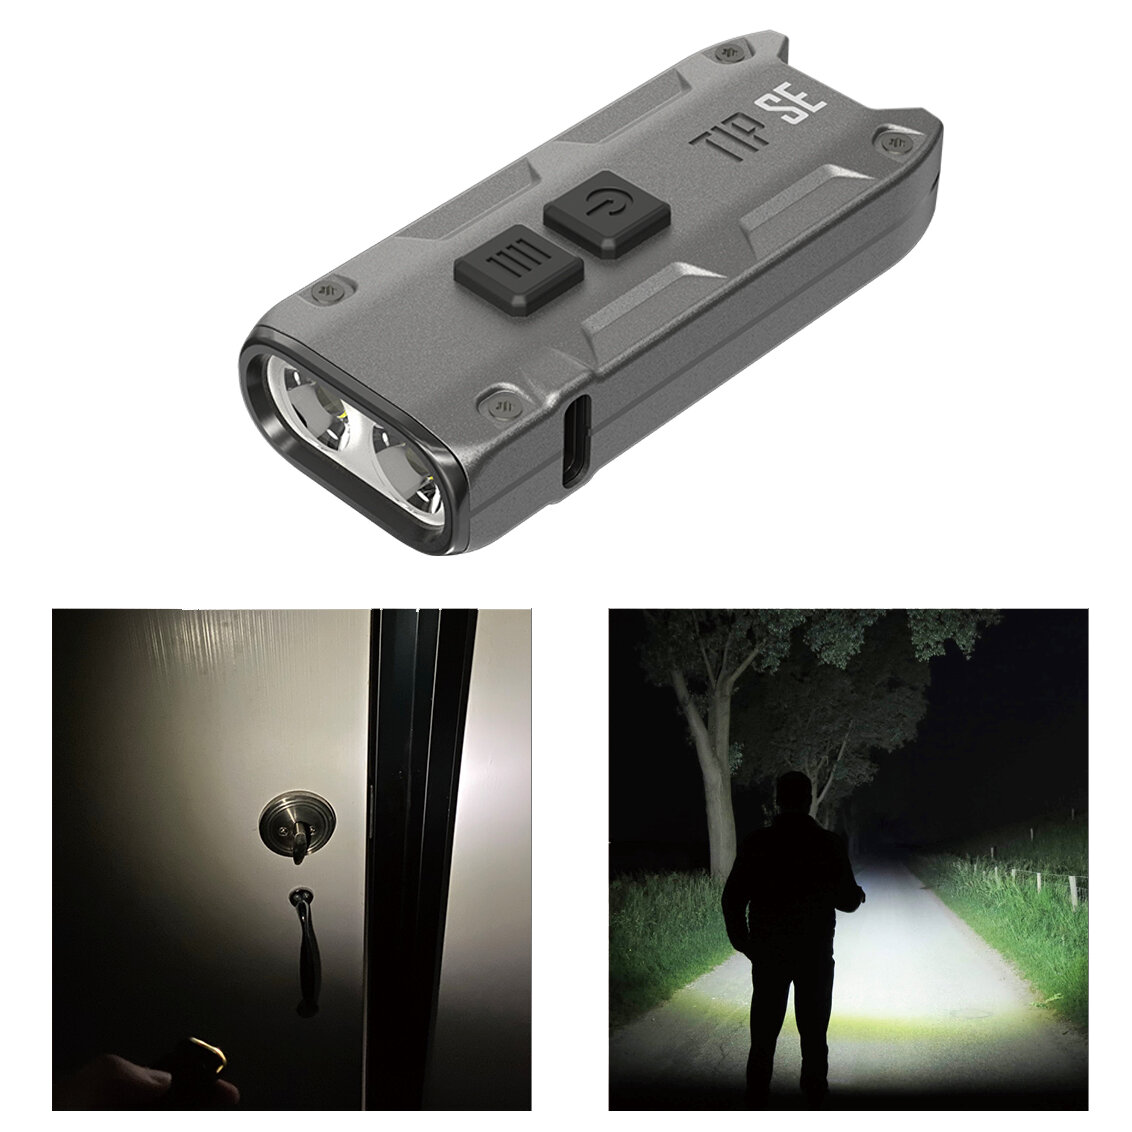 Στα €18.49 από αποθήκη Τσεχίας | NITECORE TIP SE 700LM P8 Dual Light LED Keychain Flashlight Type C Rechargeable QC Every Day Carry Mini Torch